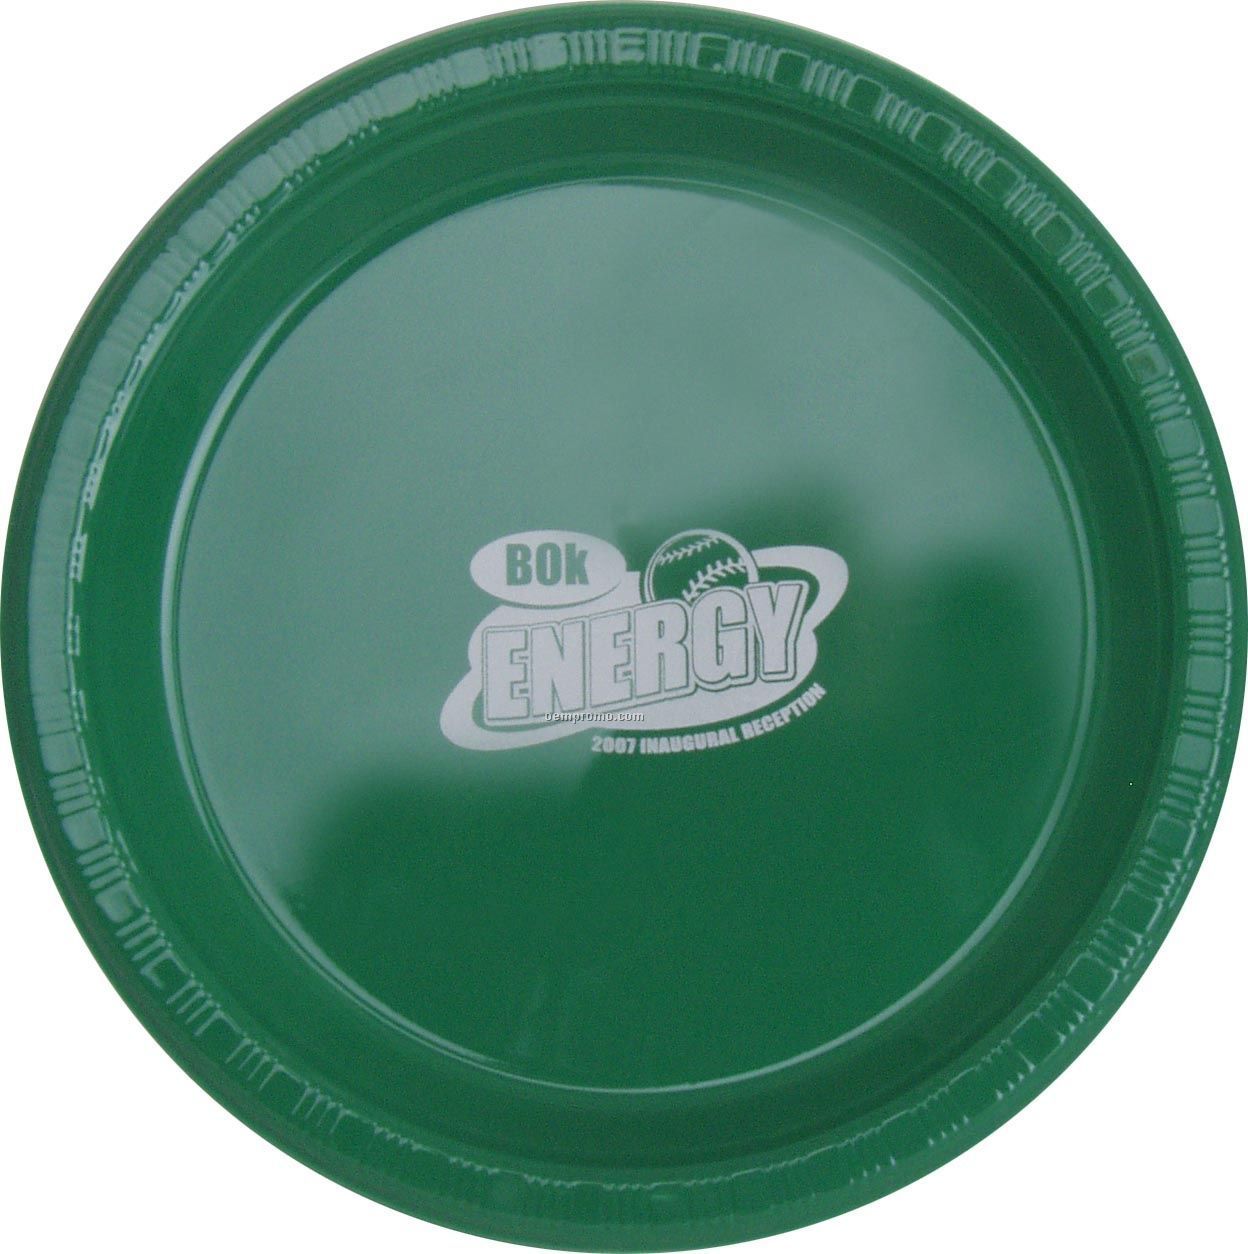 Colorware 7" Emerald Green Plastic Plate